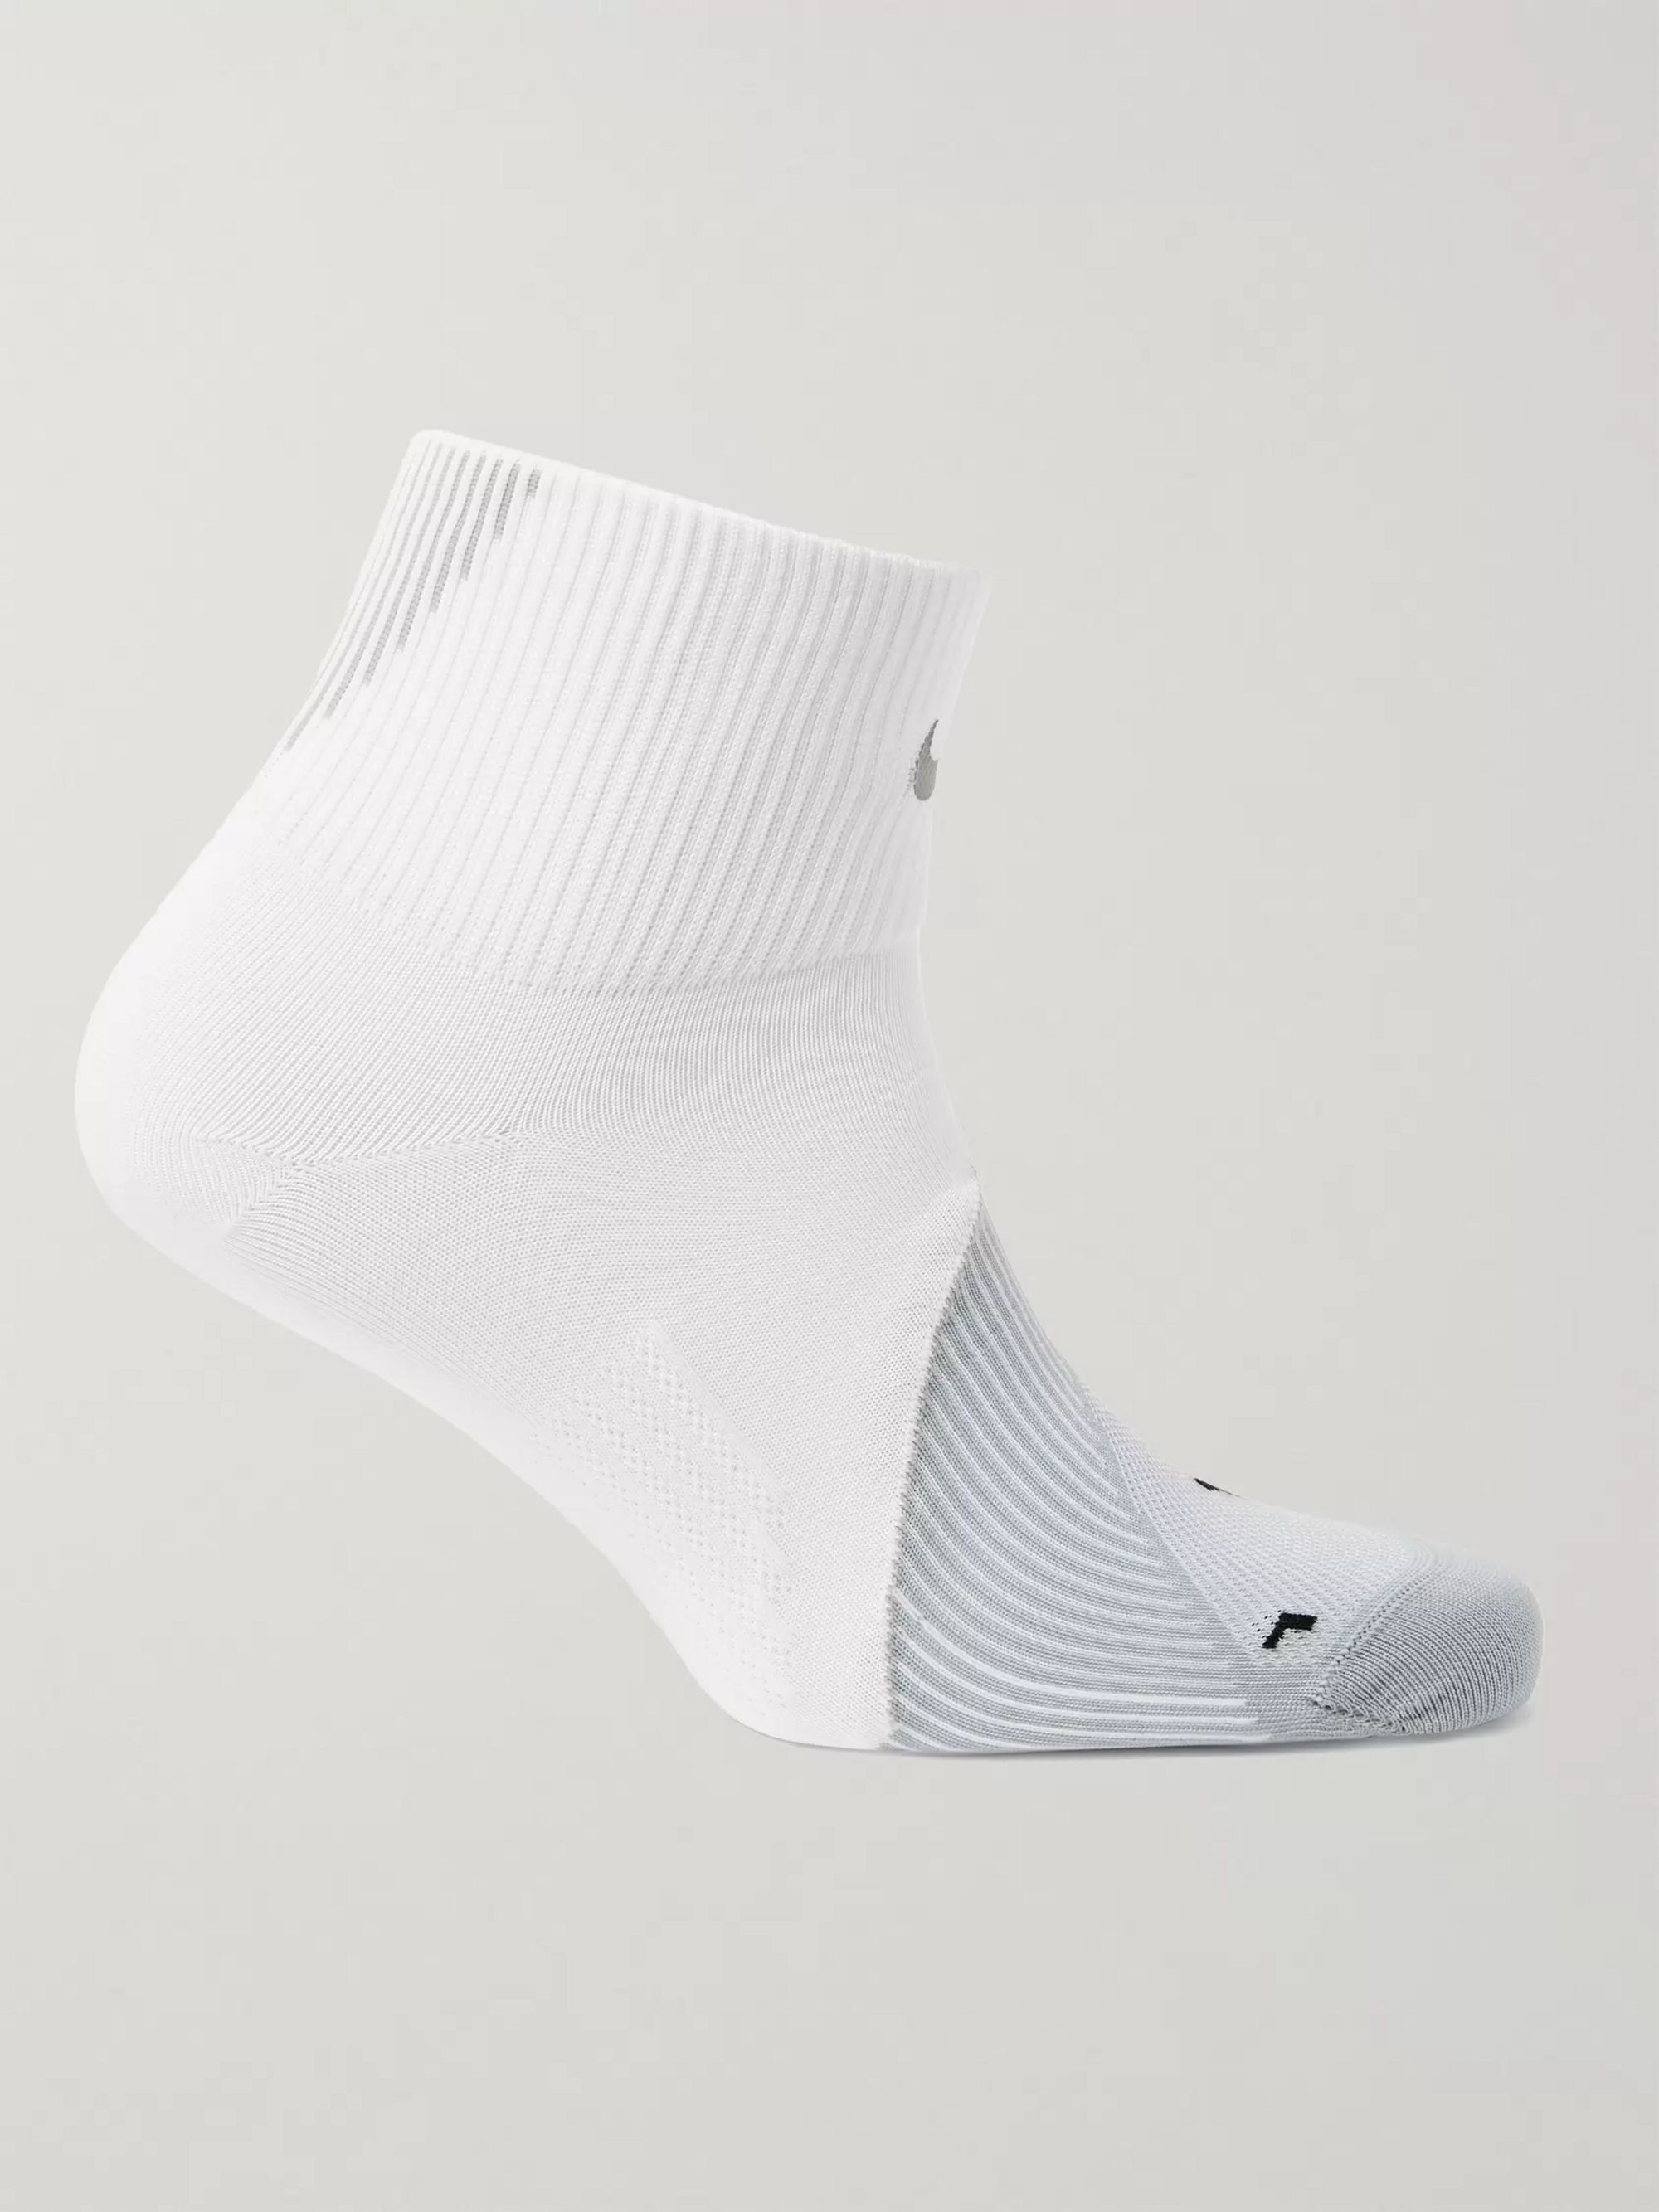 Nike Dri Fit Socks Size Chart